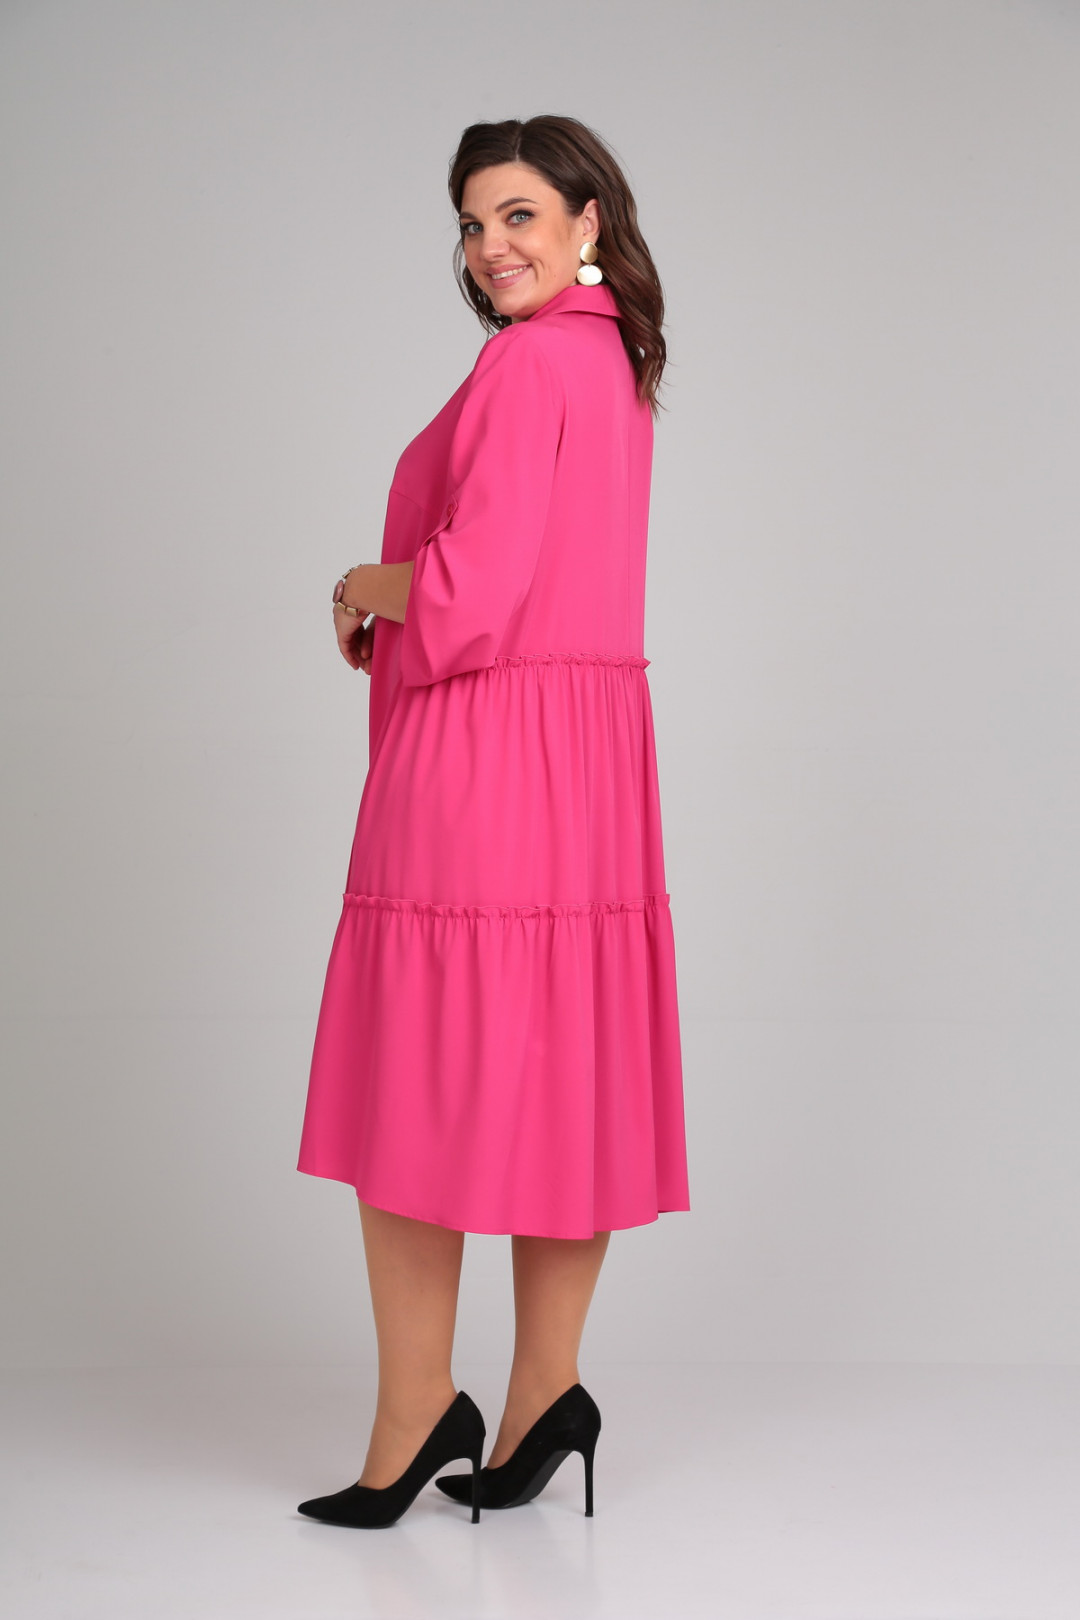 Платье Мублиз 030 розовый(ягодный)